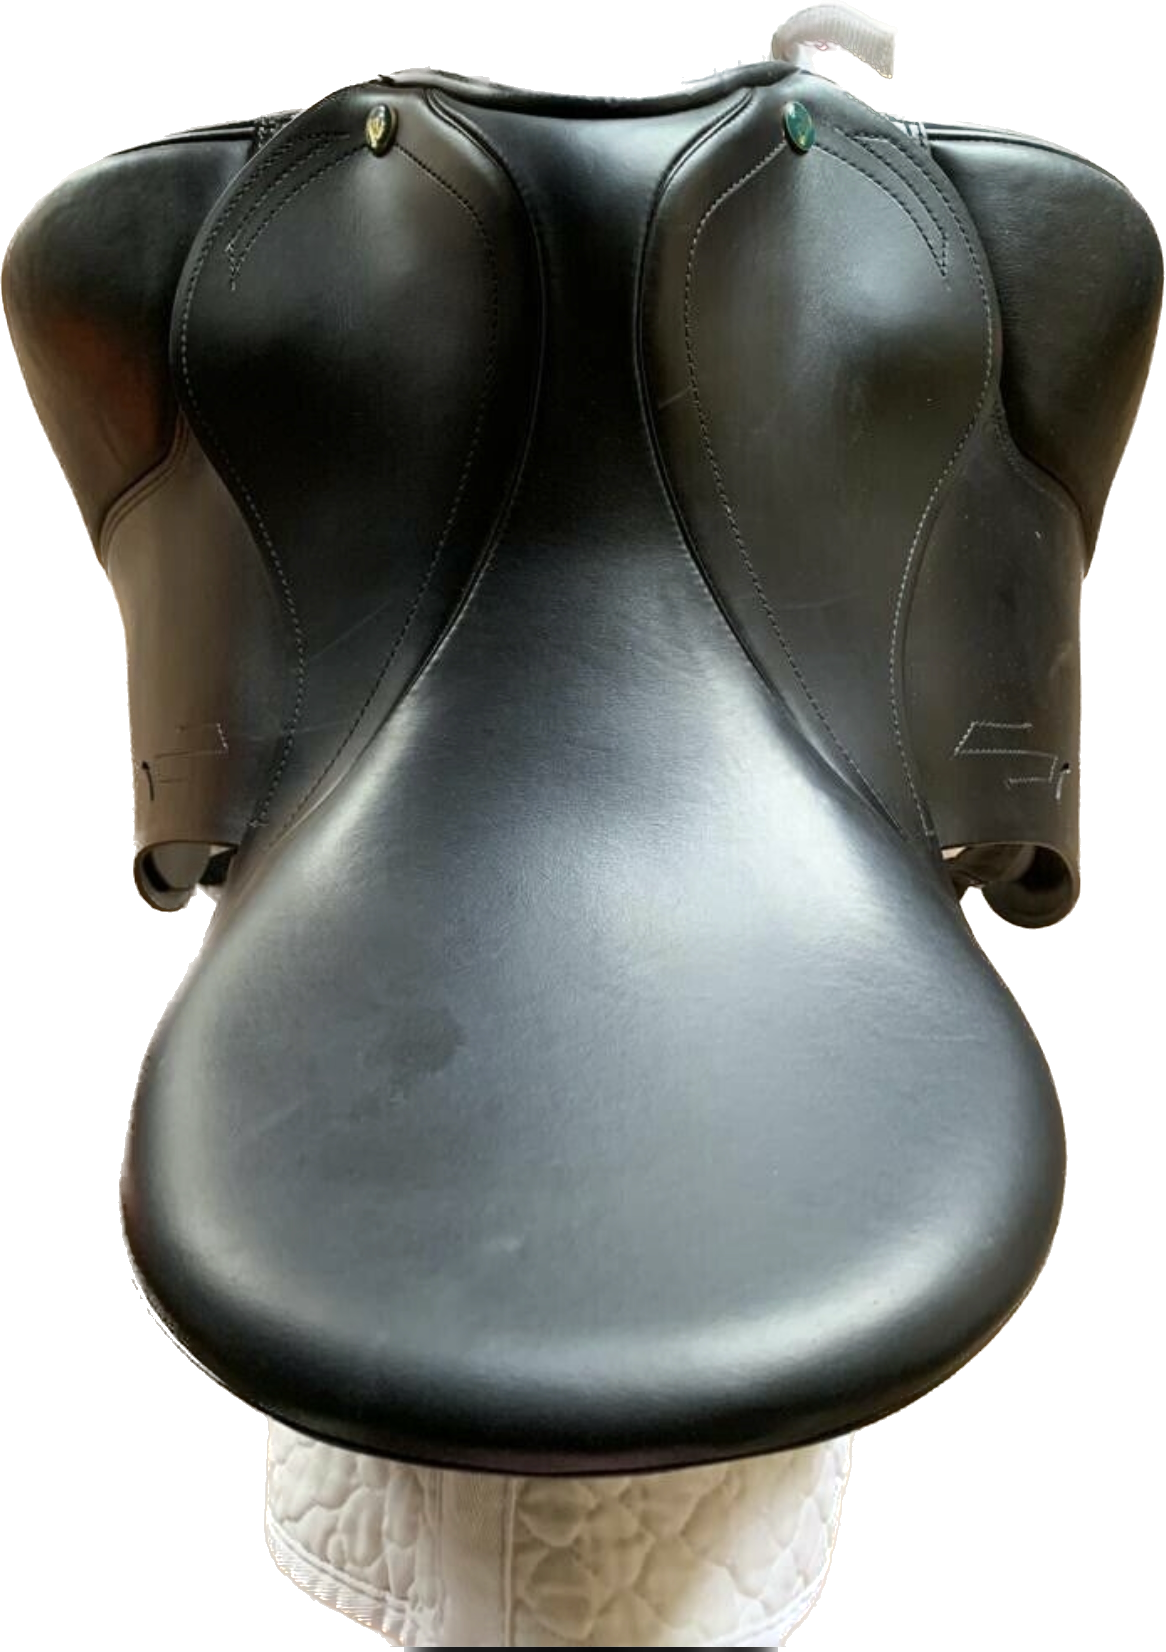 Prestige ROMA dressage saddle 1734 NEW